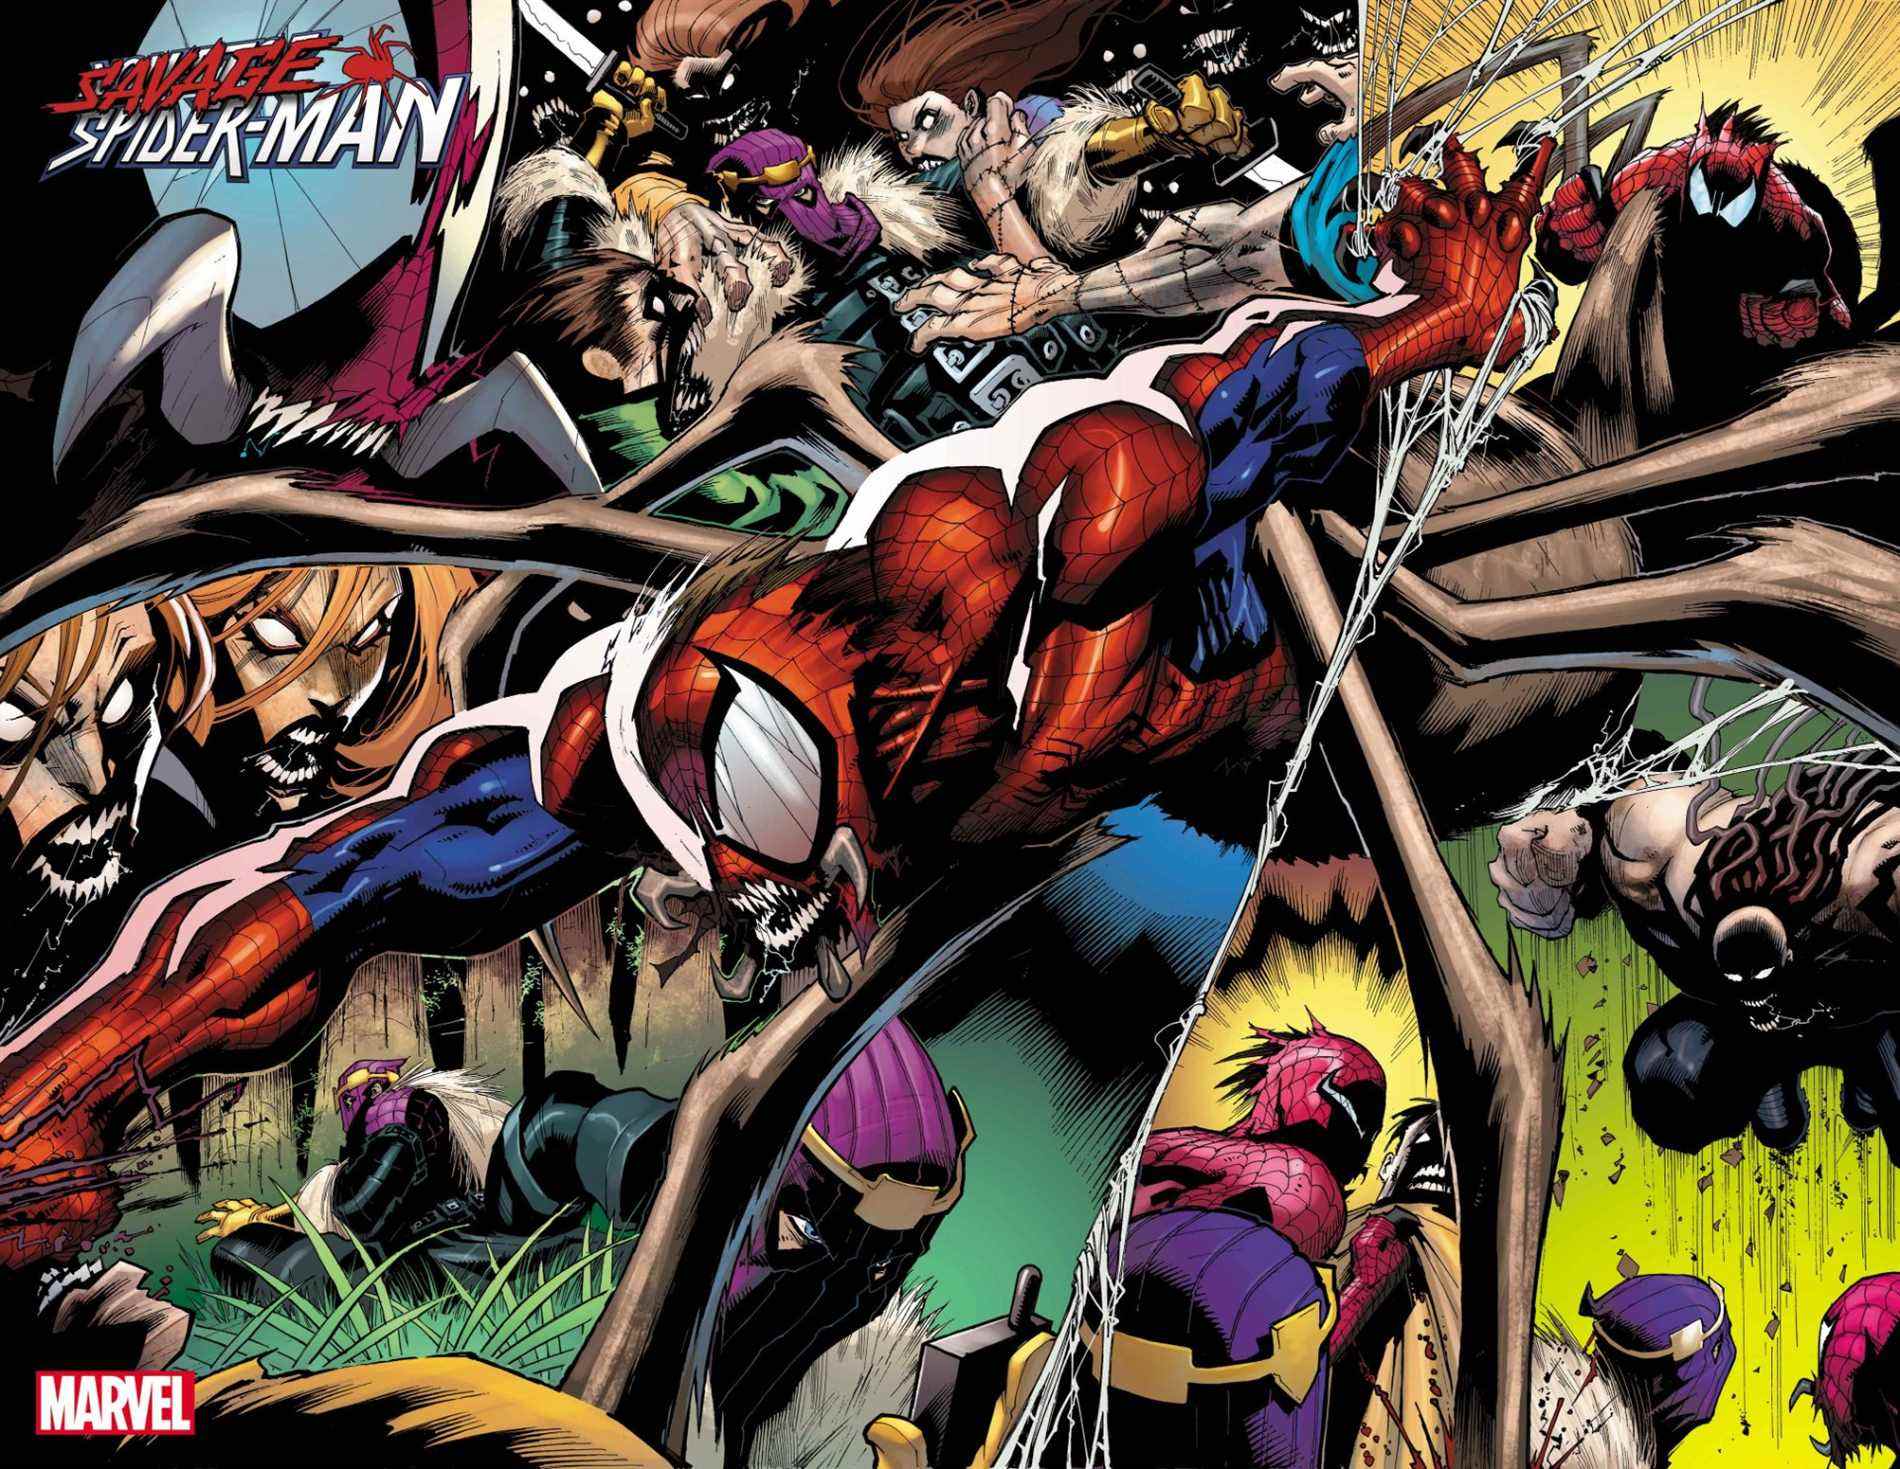 Spider-Man sauvage #1